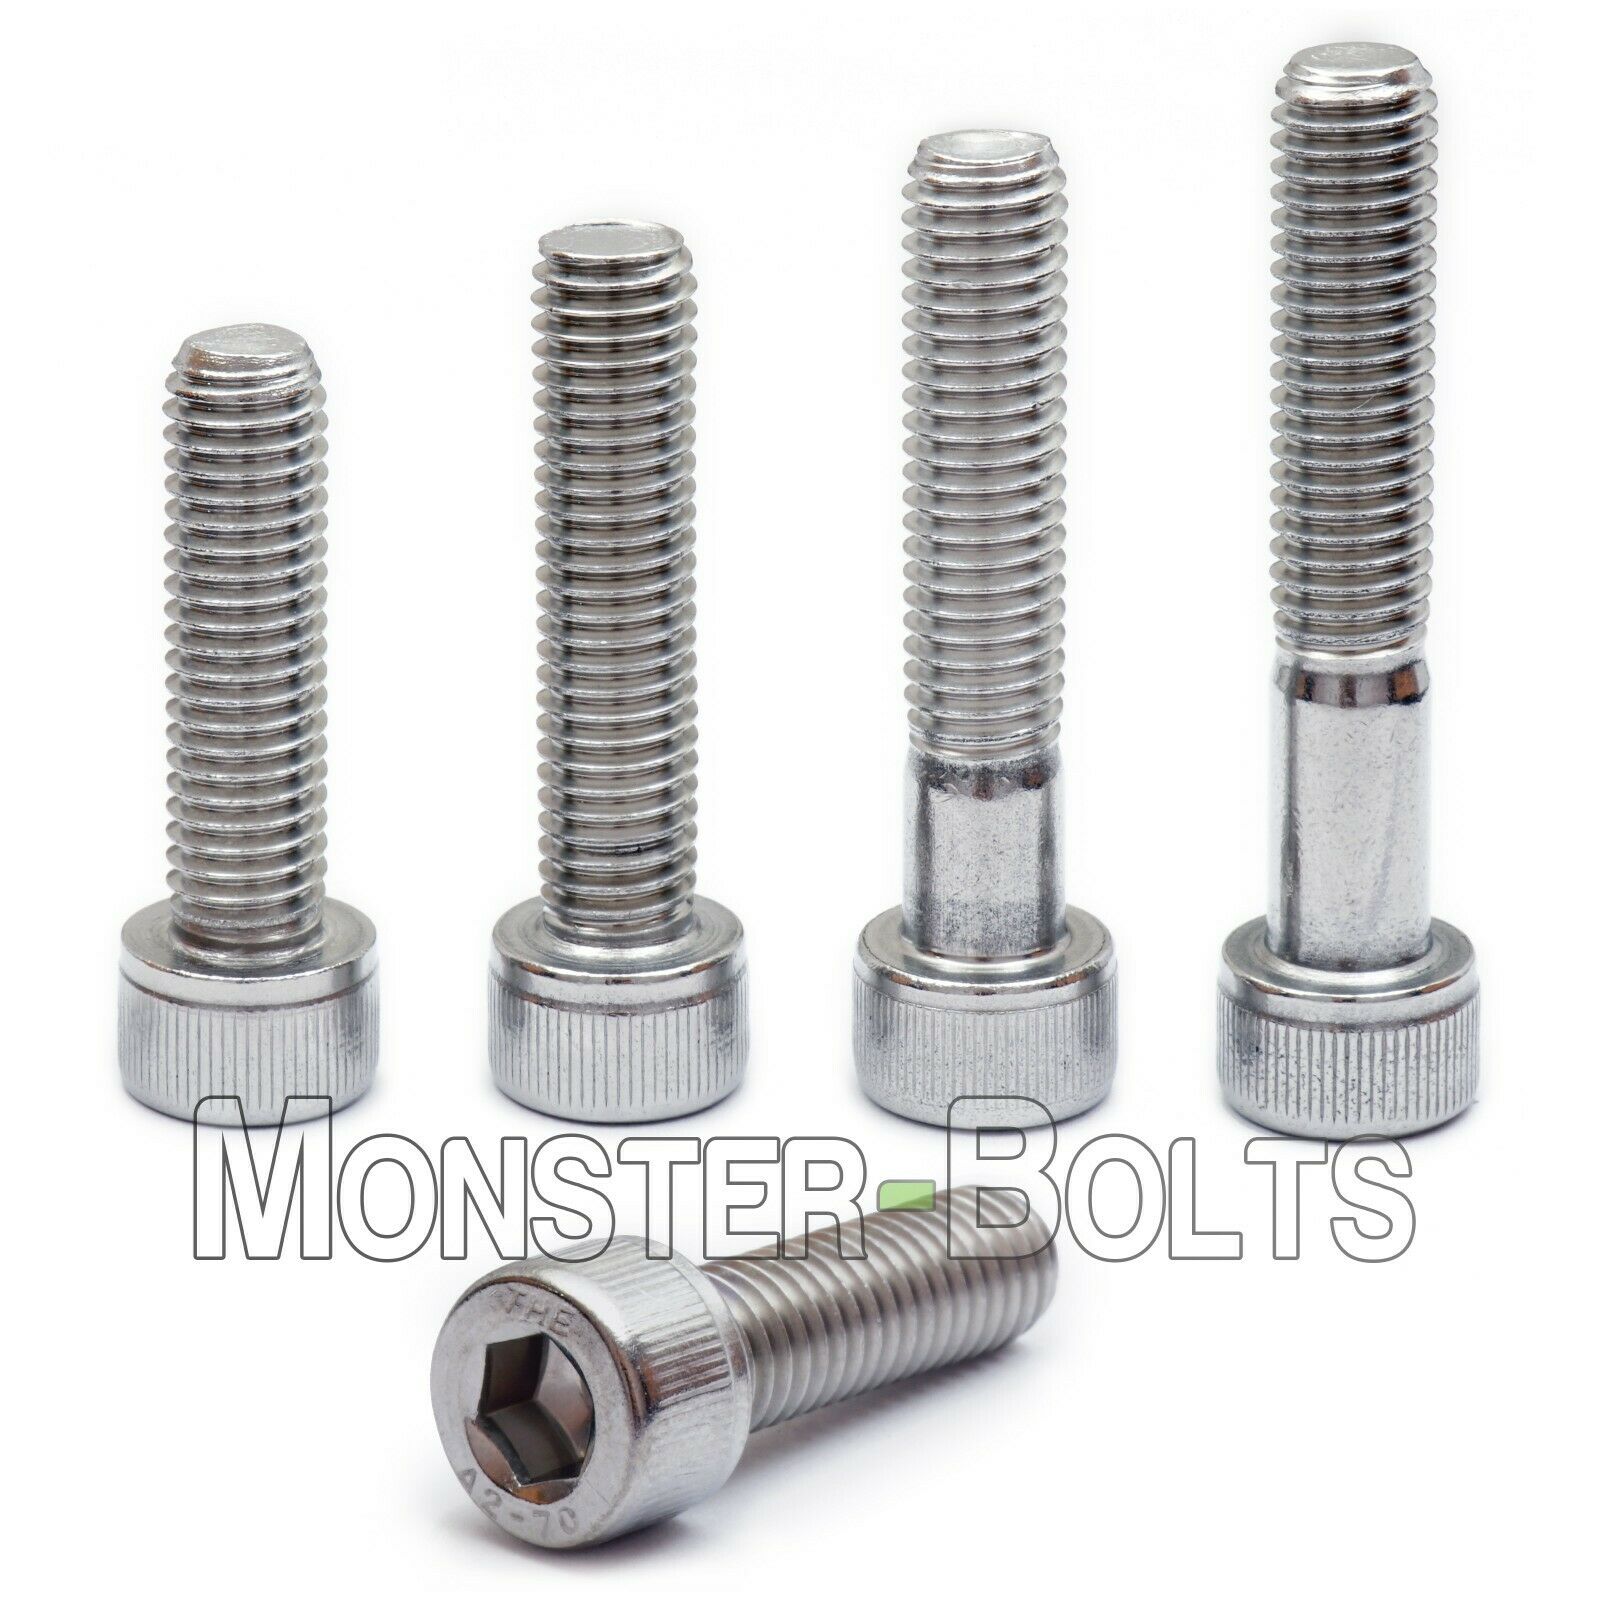 M6 Stainless Steel Socket Head Cap Screws, A2 / 18-8 Metric Din 912, 1.0 Coarse